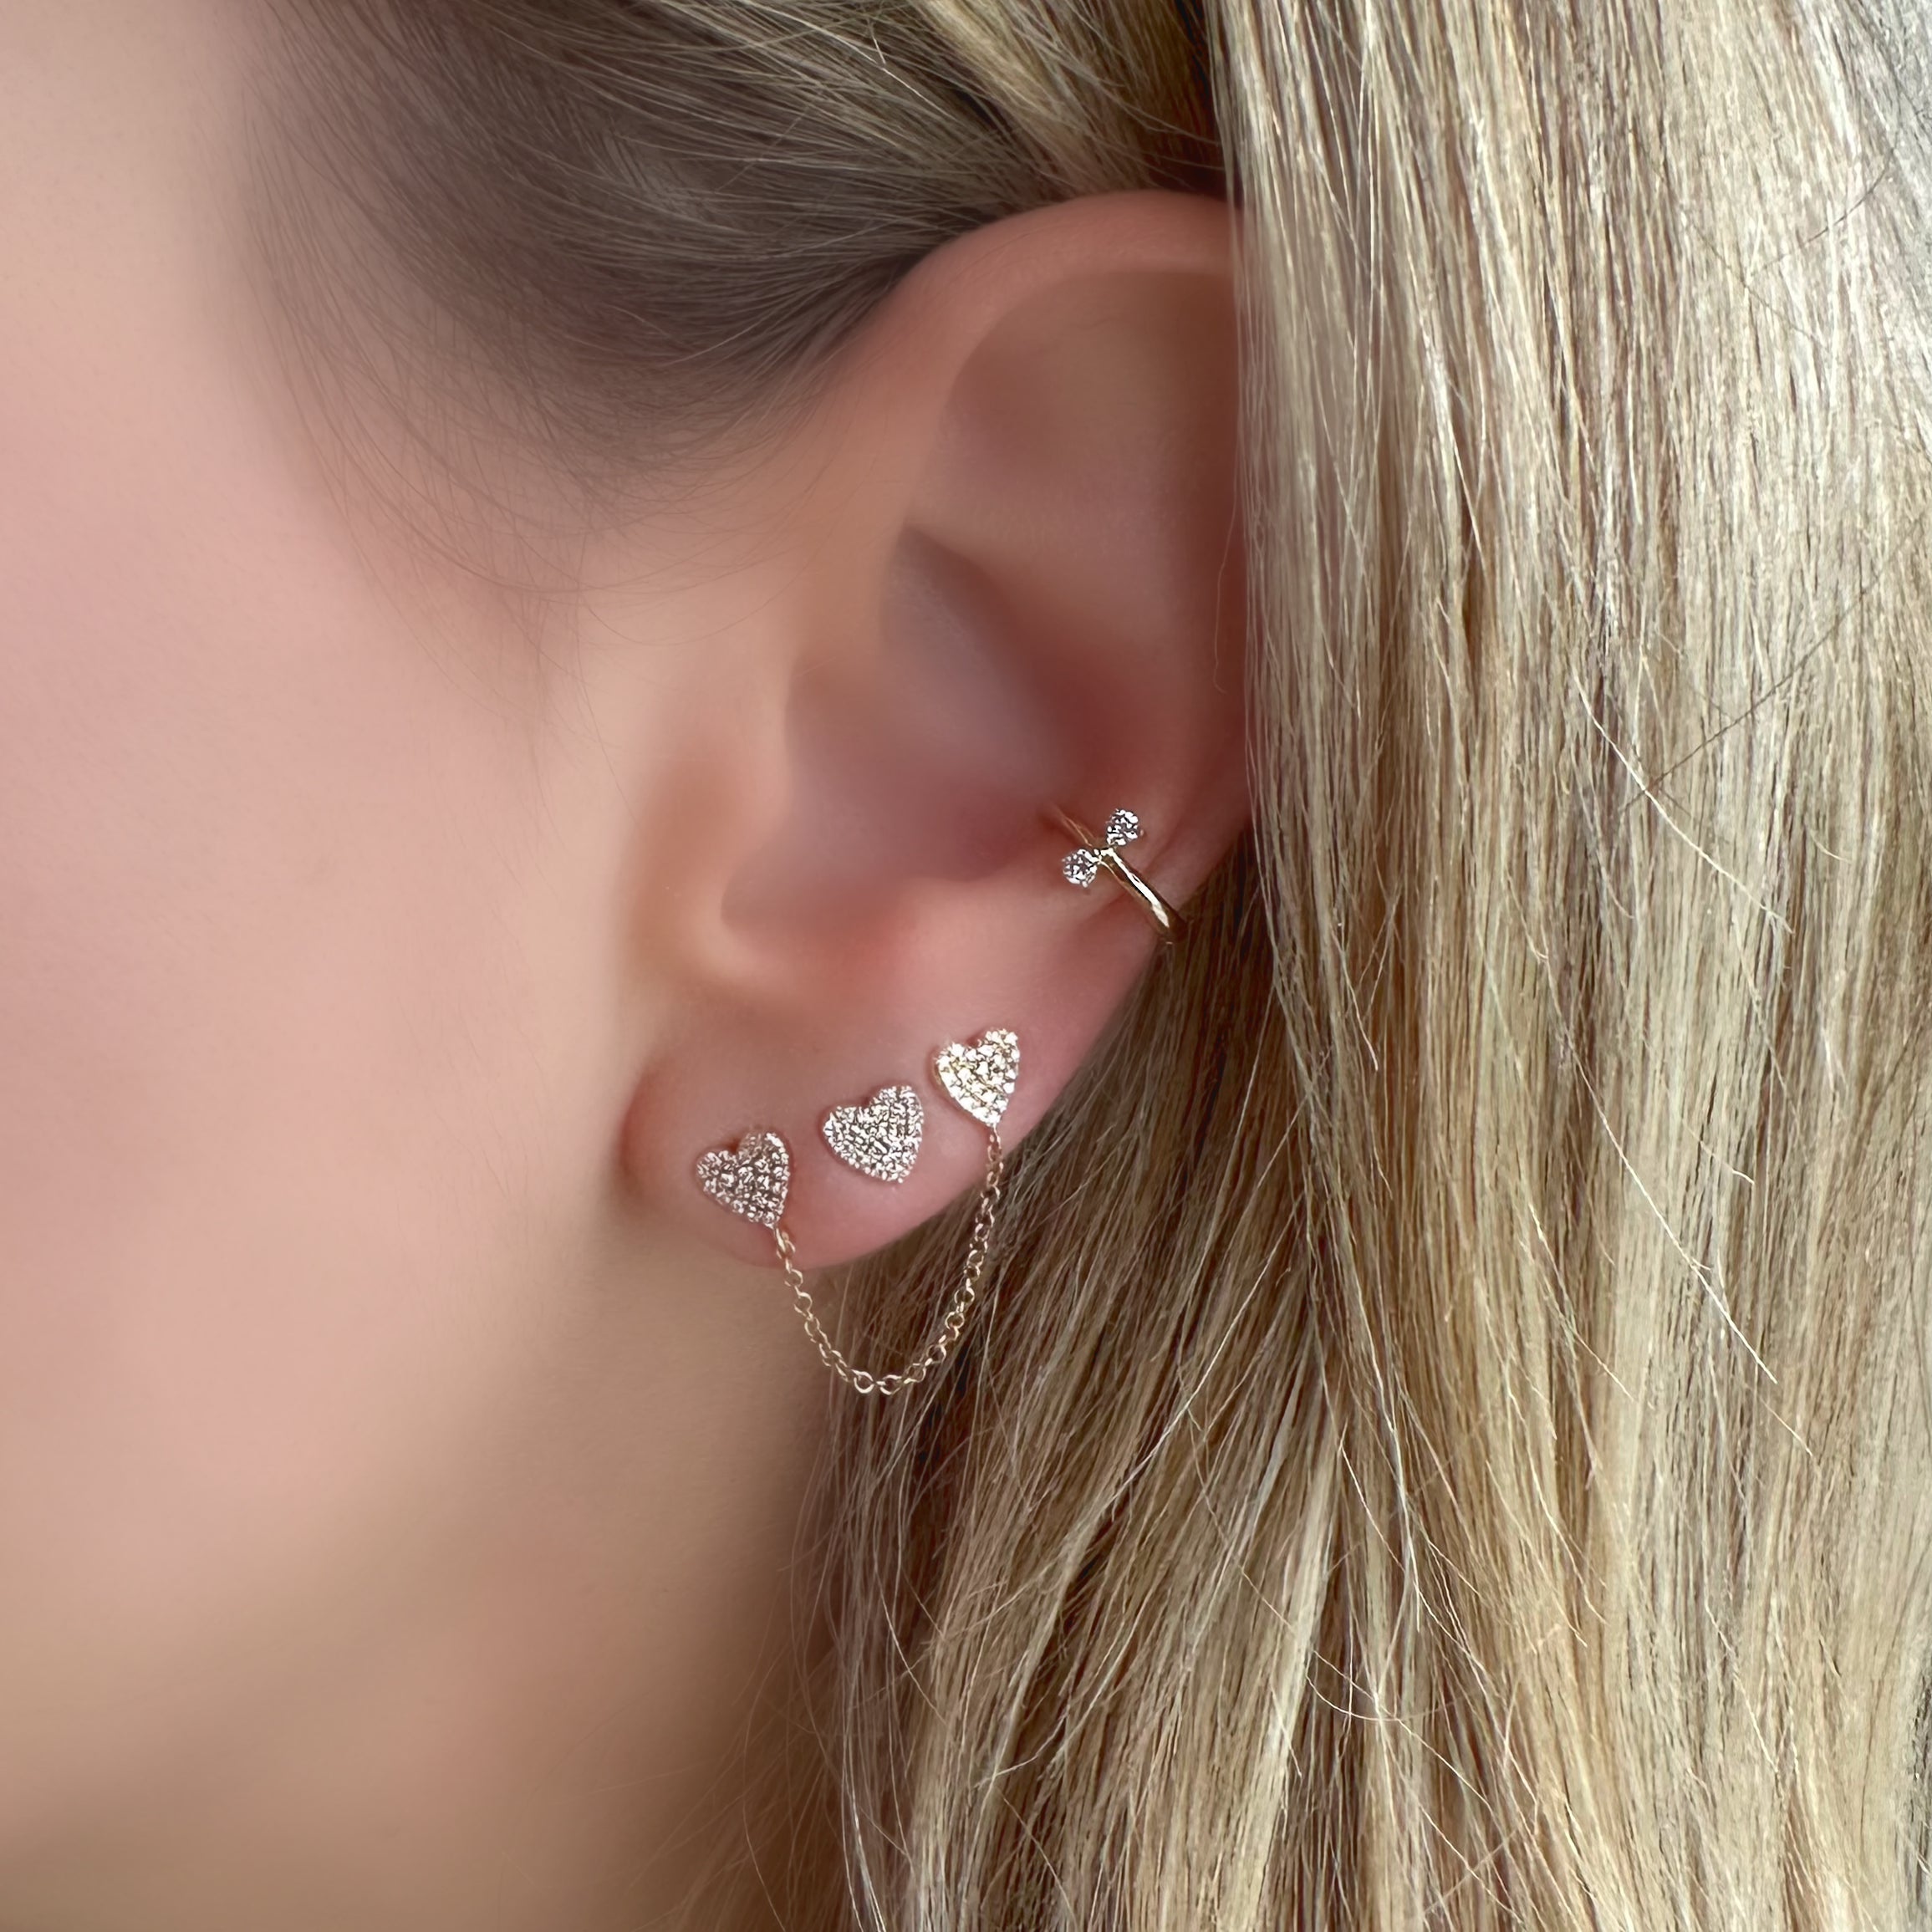 14K Gold Diamond Micro Pave Heart Button Earrings - Earrings - Izakov Diamonds + Fine Jewelry